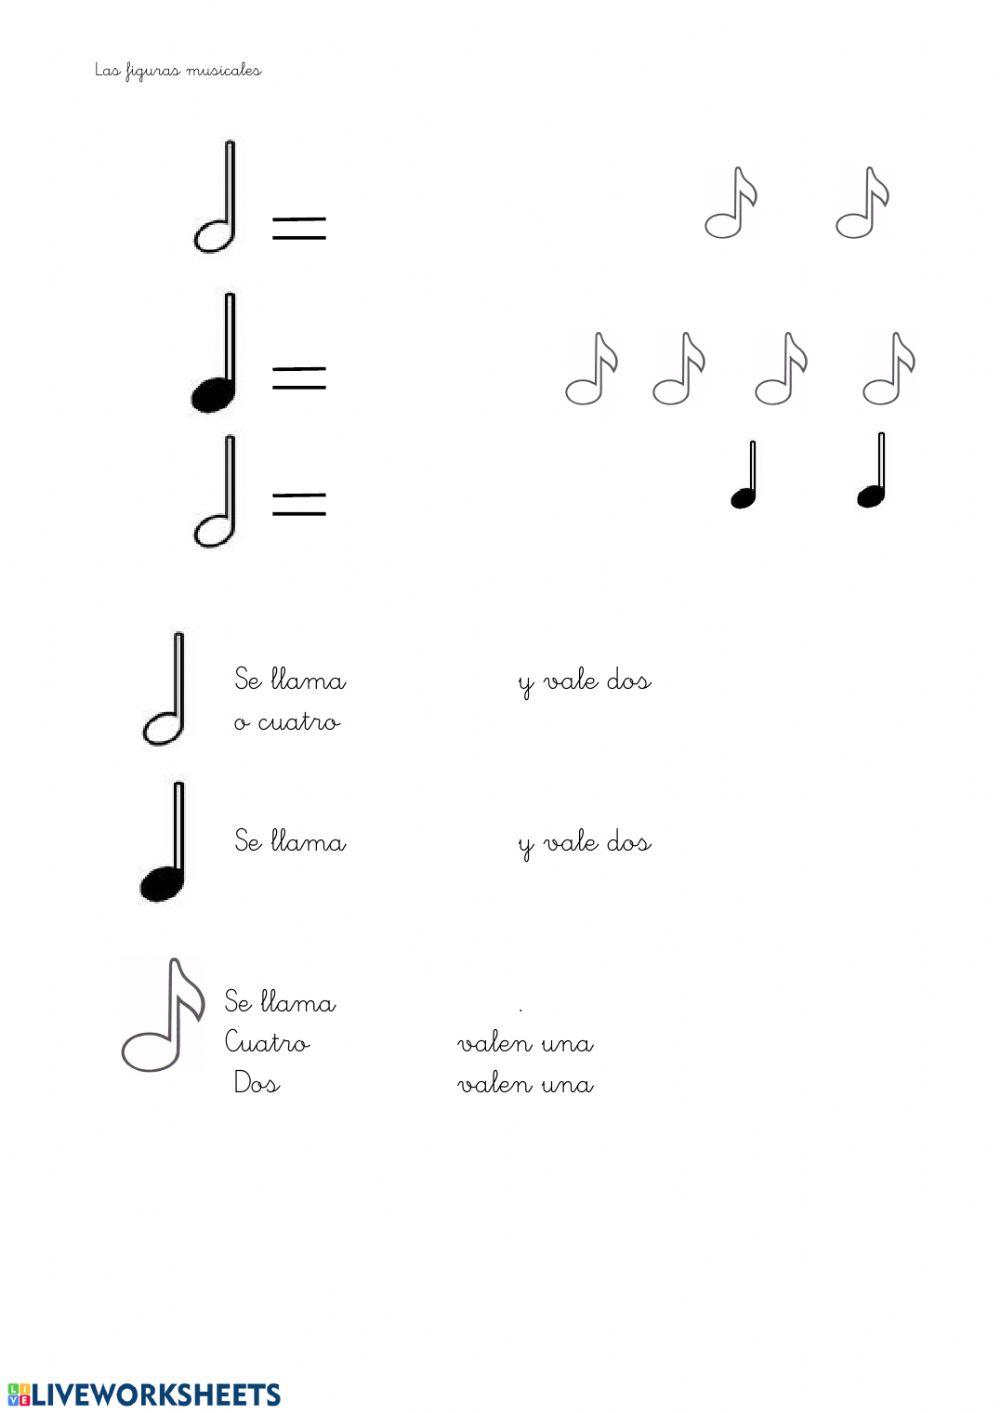 Equivalencias de figuras musicales